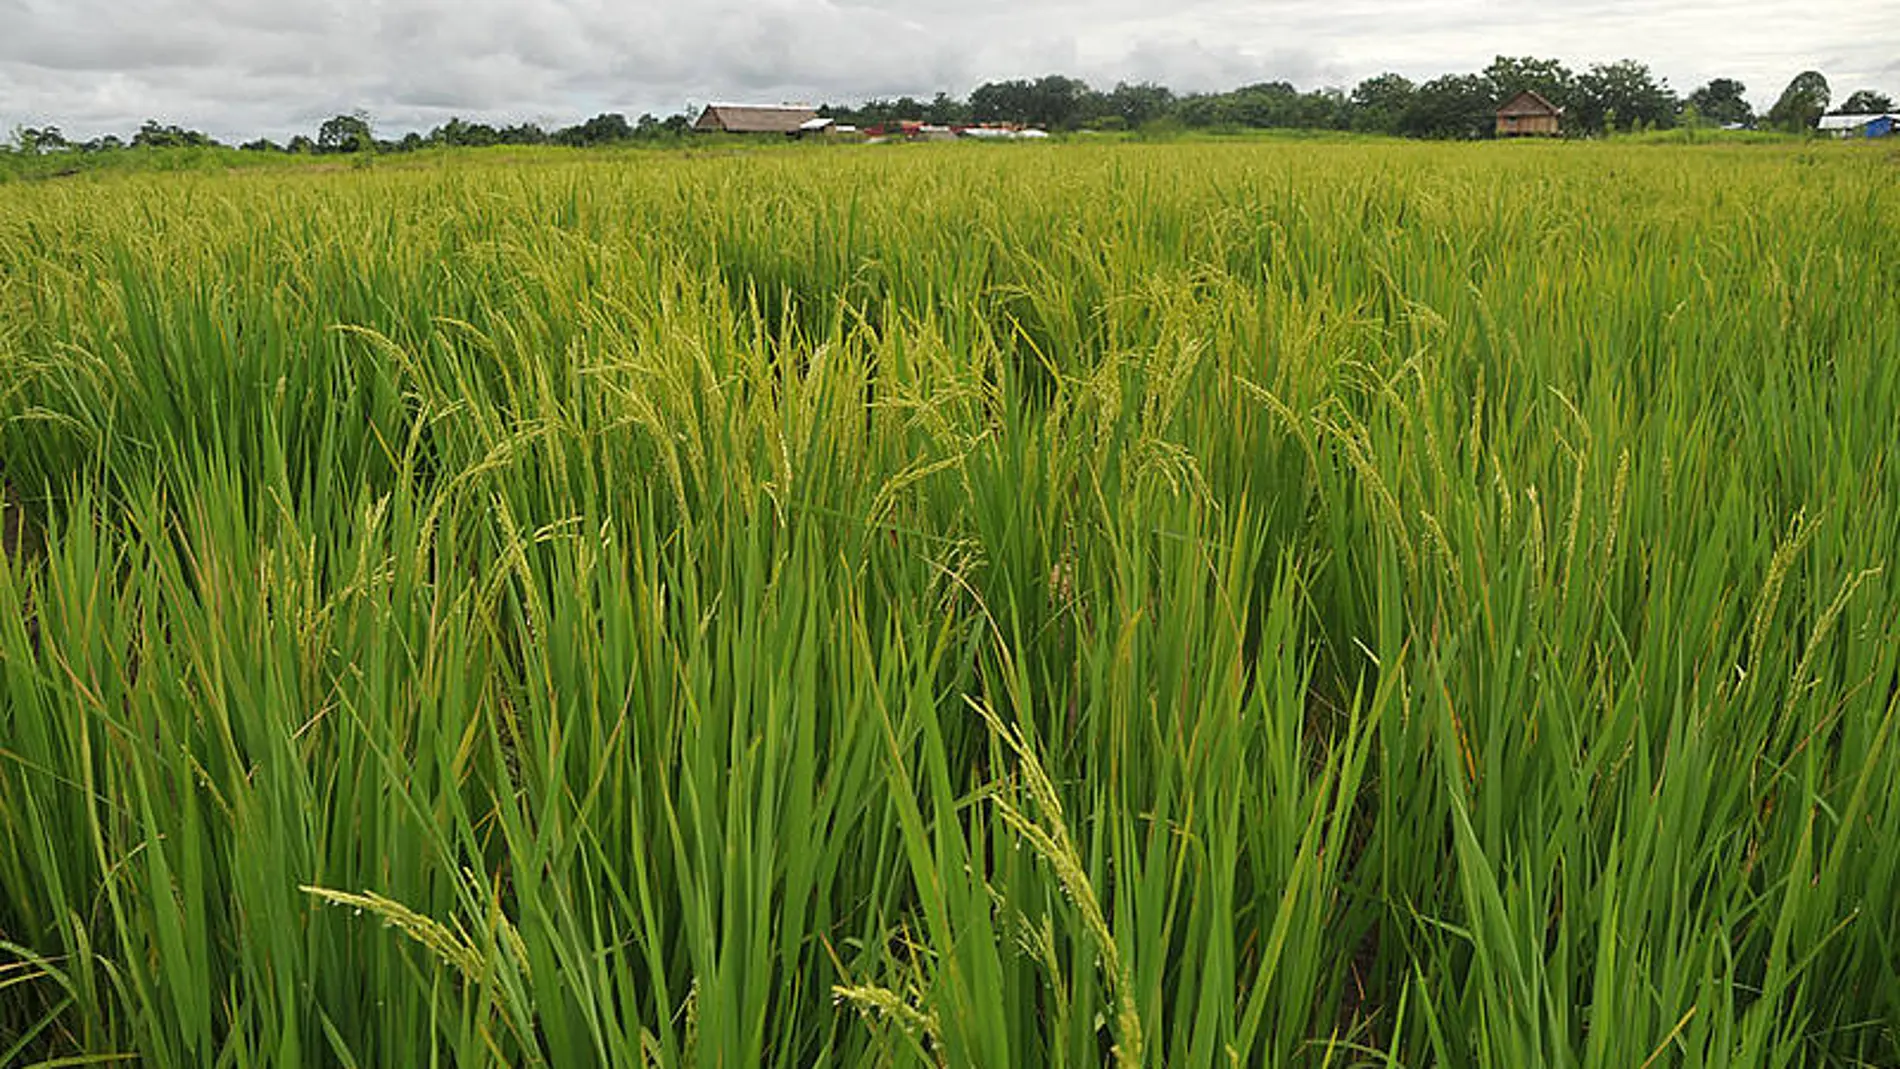 Desde hace ocho años, la caña de azúcar y la palma aceitera han sido las materias primas utilizadas para la producción de bioetanol y biodiésel respectivamente